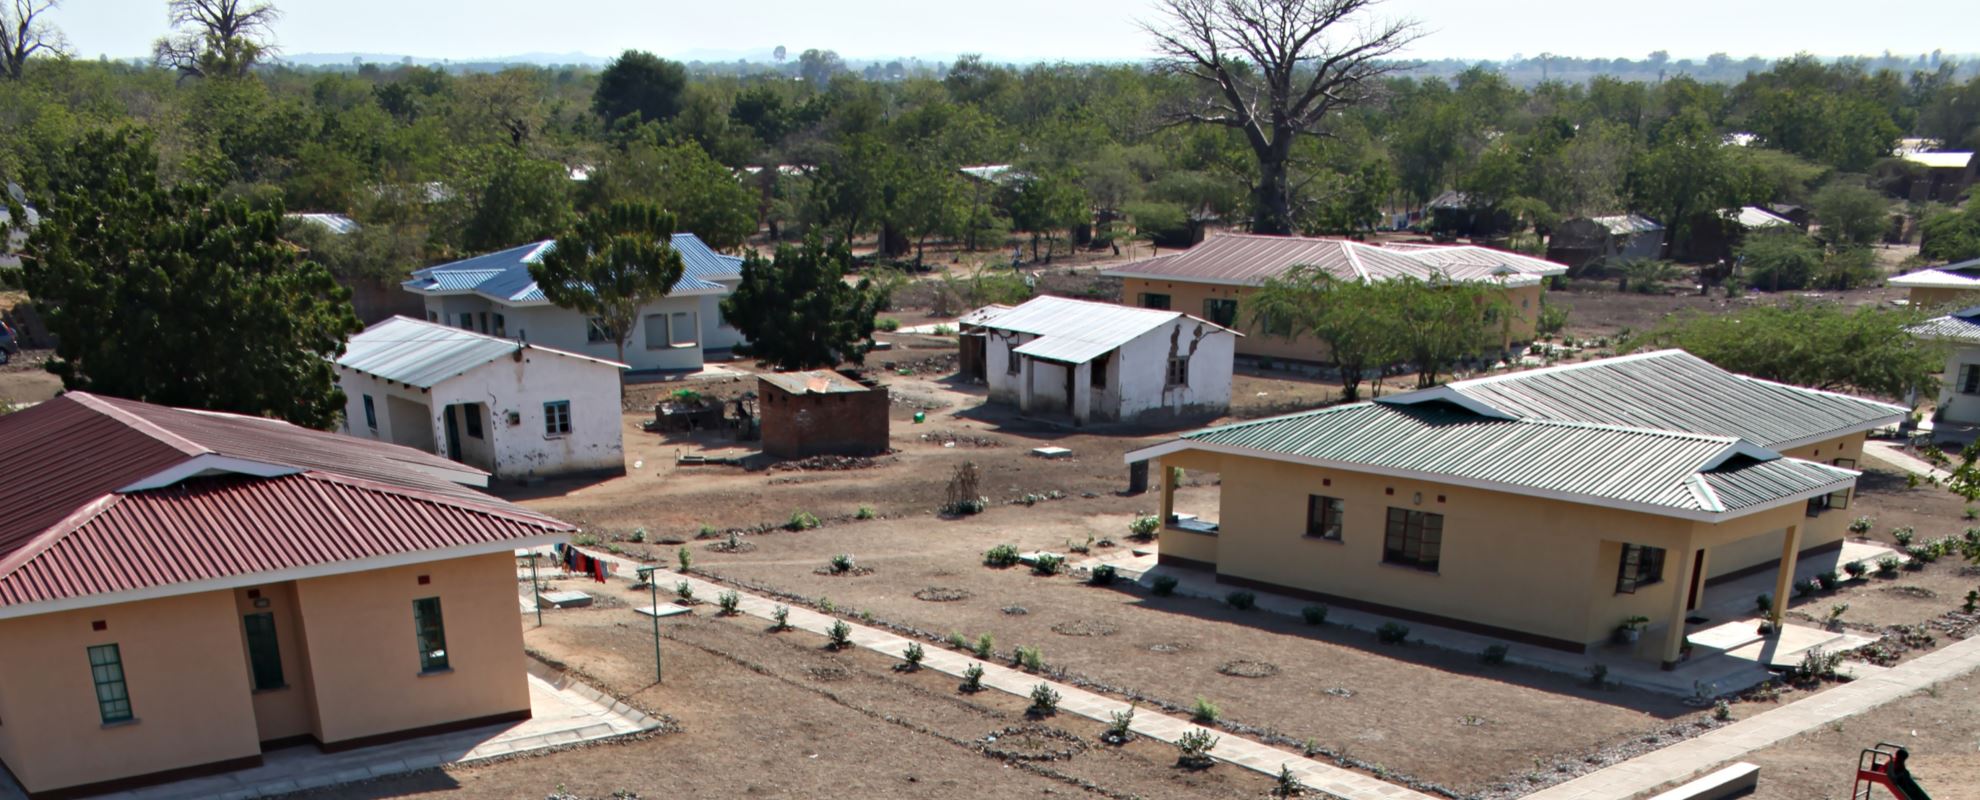 Det ble åpnet to nye norskfinansierte barnebyer i 2016, én i Ngabu, Malawi (på bildet) og én i Mwanza, Tanzania. Foto: Bjørn-Owe Holmberg